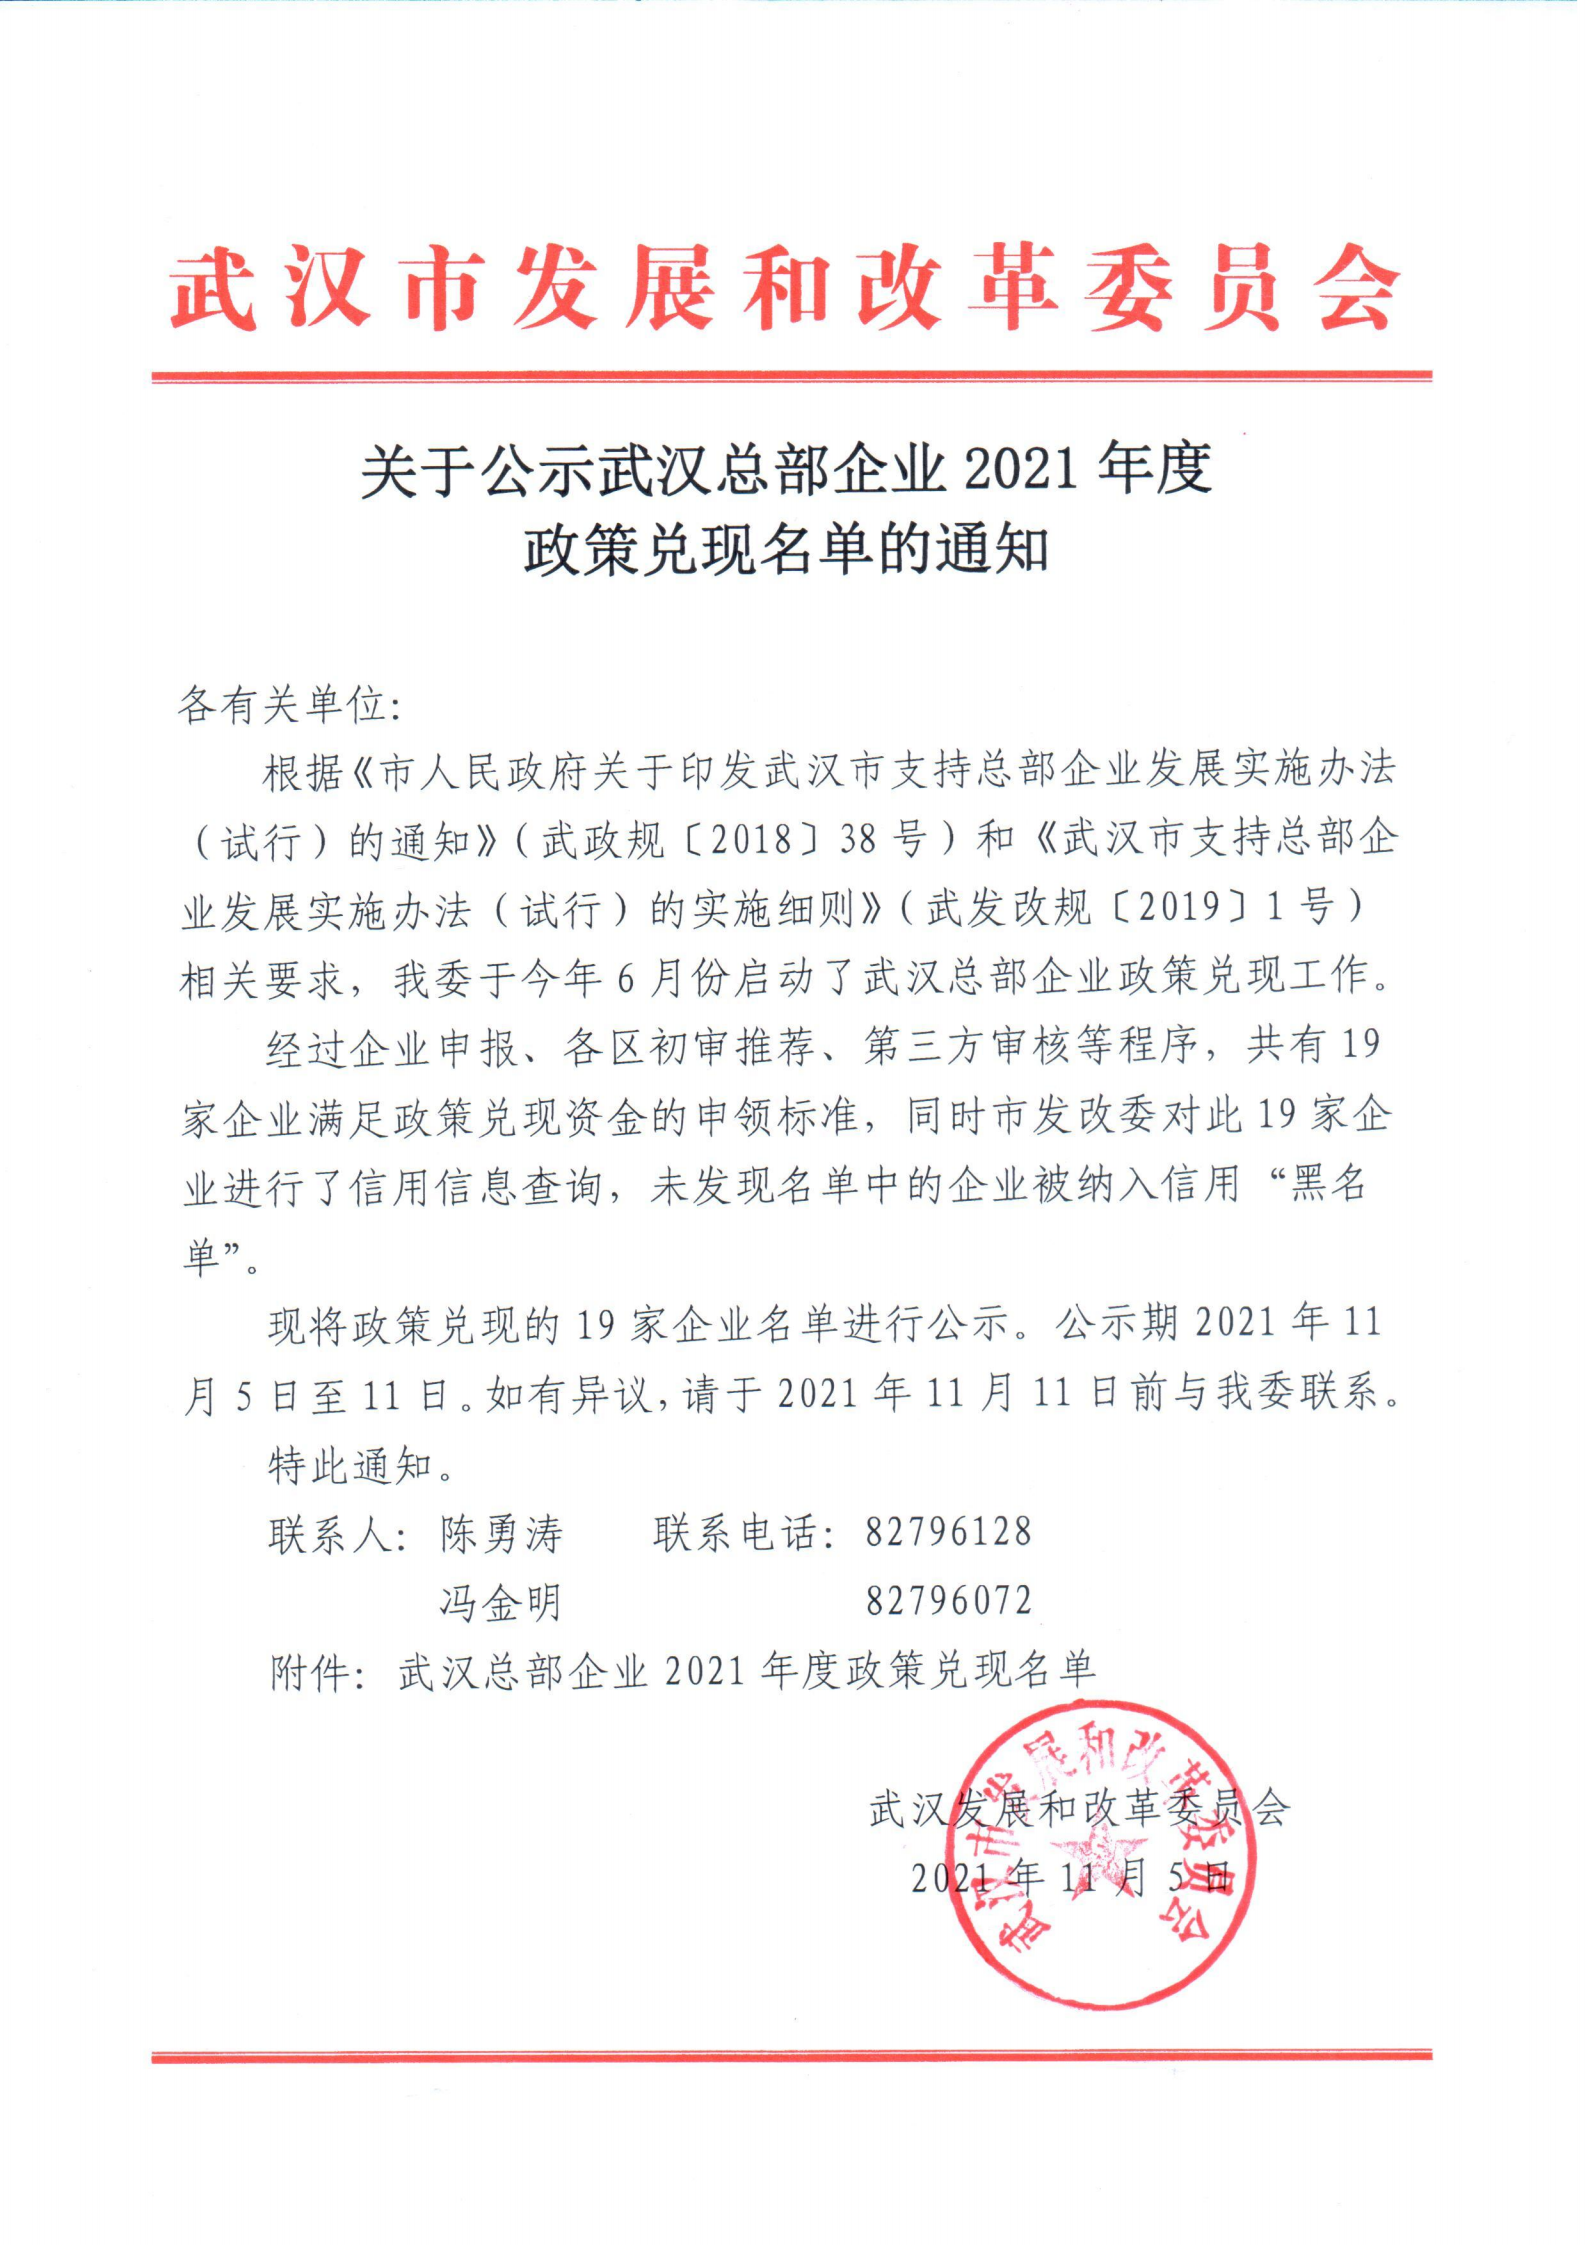 关于公示武汉总部企业2021年度政策兑现名单的通知_00.png